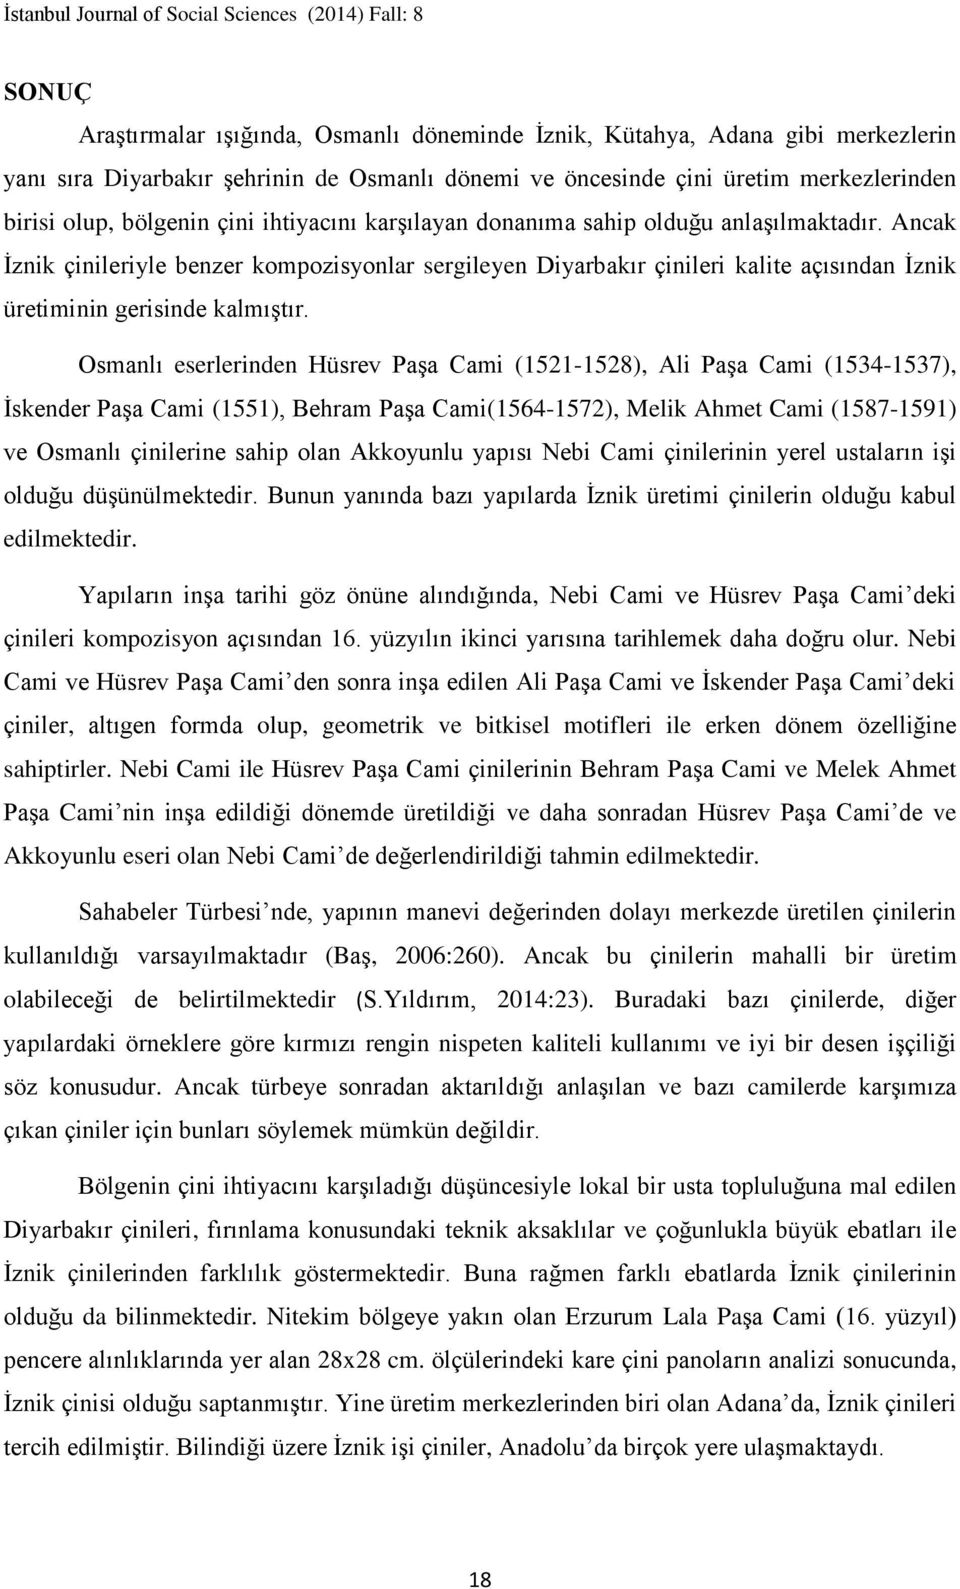 Osmanlı eserlerinden Hüsrev Paşa Cami (1521-1528), Ali Paşa Cami (1534-1537), İskender Paşa Cami (1551), Behram Paşa Cami(1564-1572), Melik Ahmet Cami (1587-1591) ve Osmanlı çinilerine sahip olan